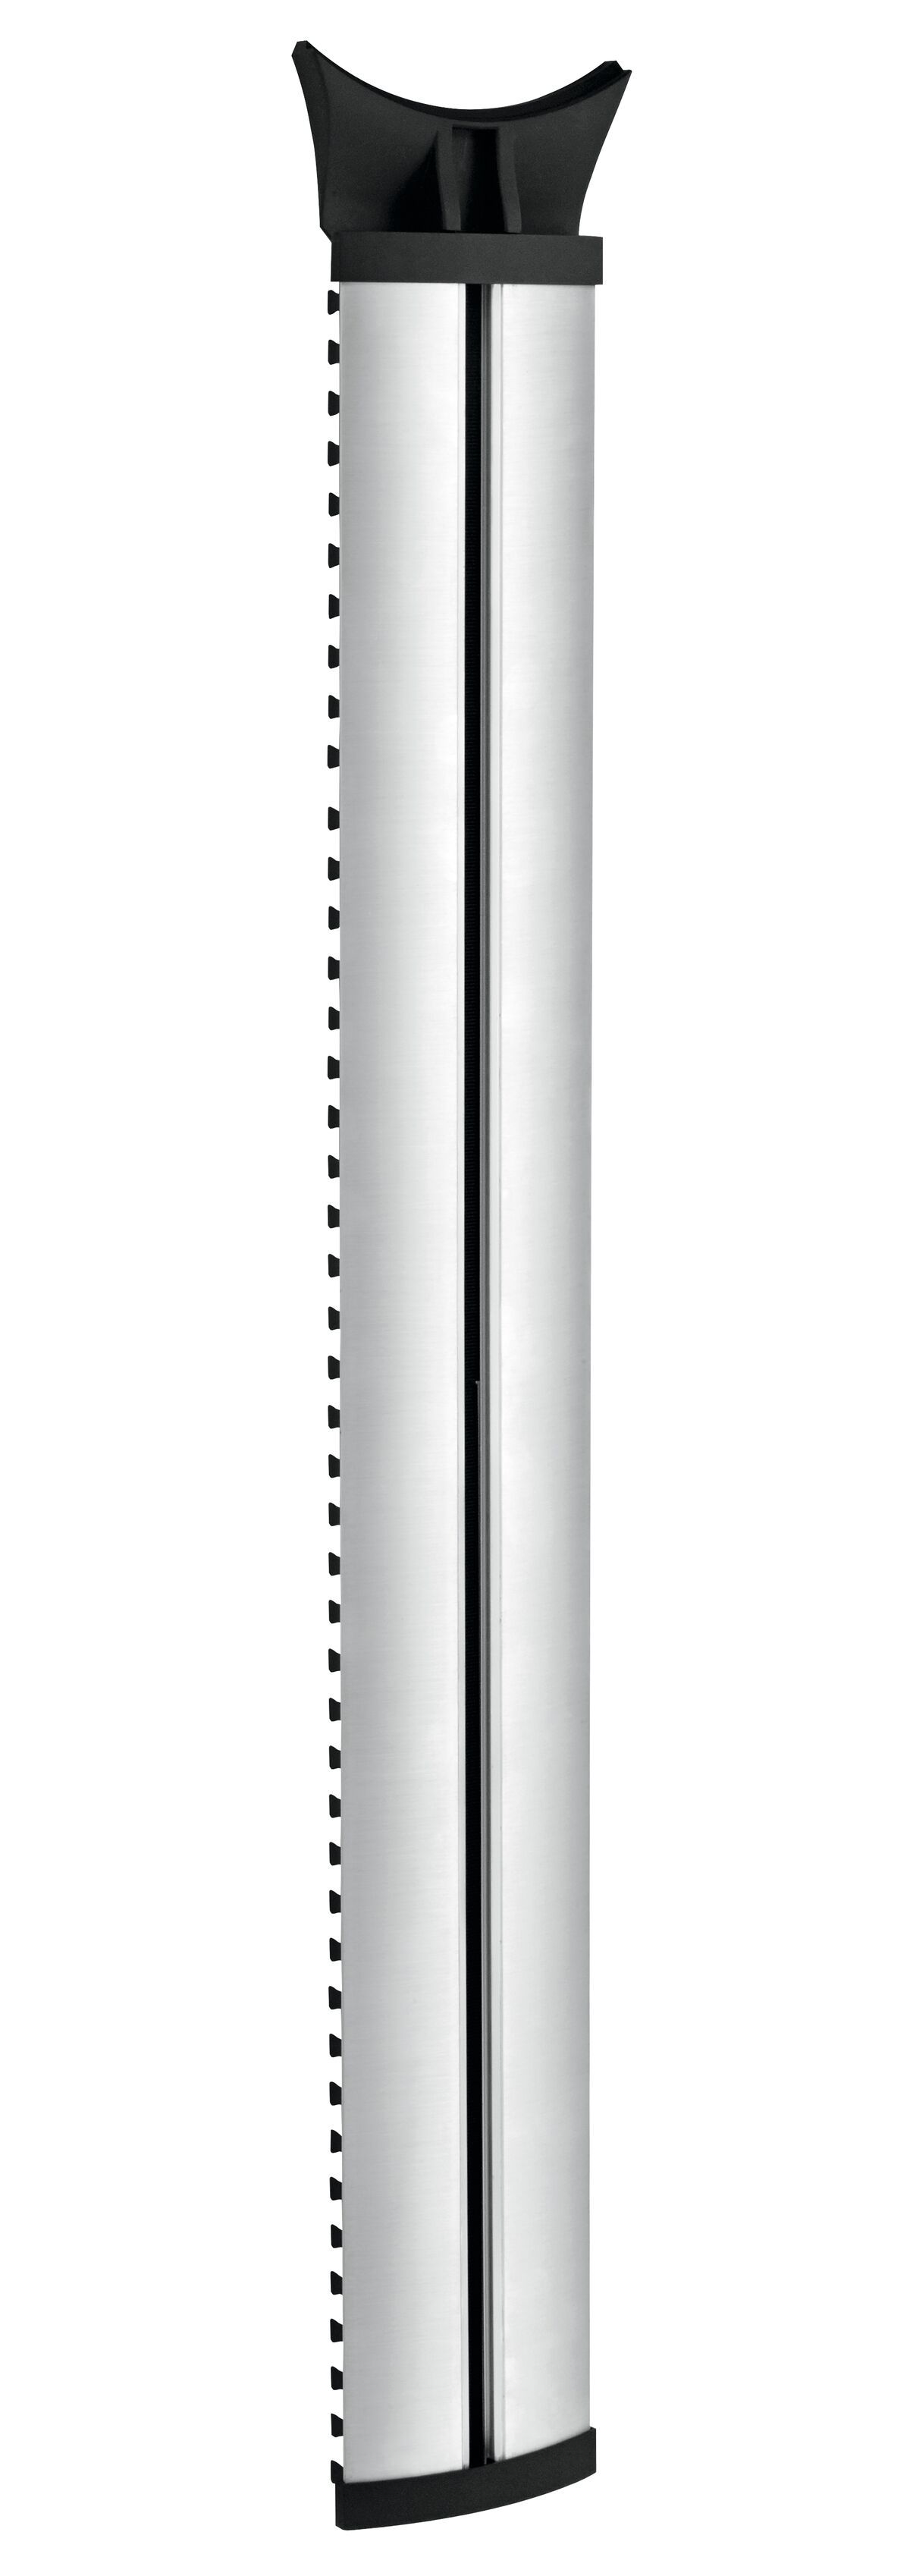 Vogel's NEXT 7840 Cable Column - Número máx. de cables a sostener: Hasta 10 cables - Longitud: 100 cm - Product